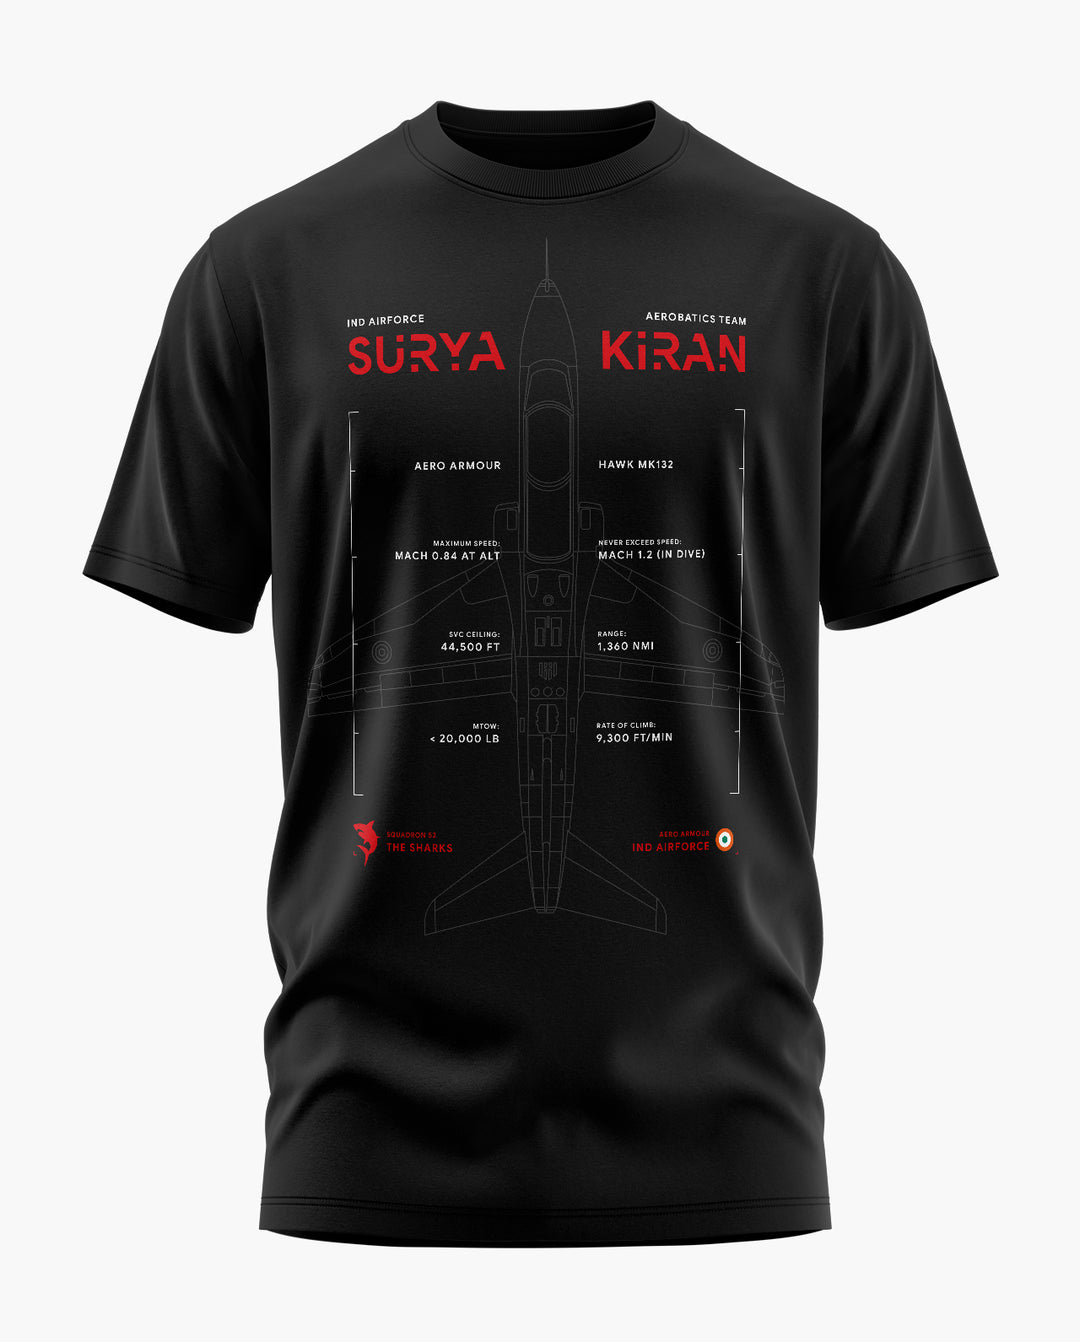 Surya Kiran Sharks T-Shirt